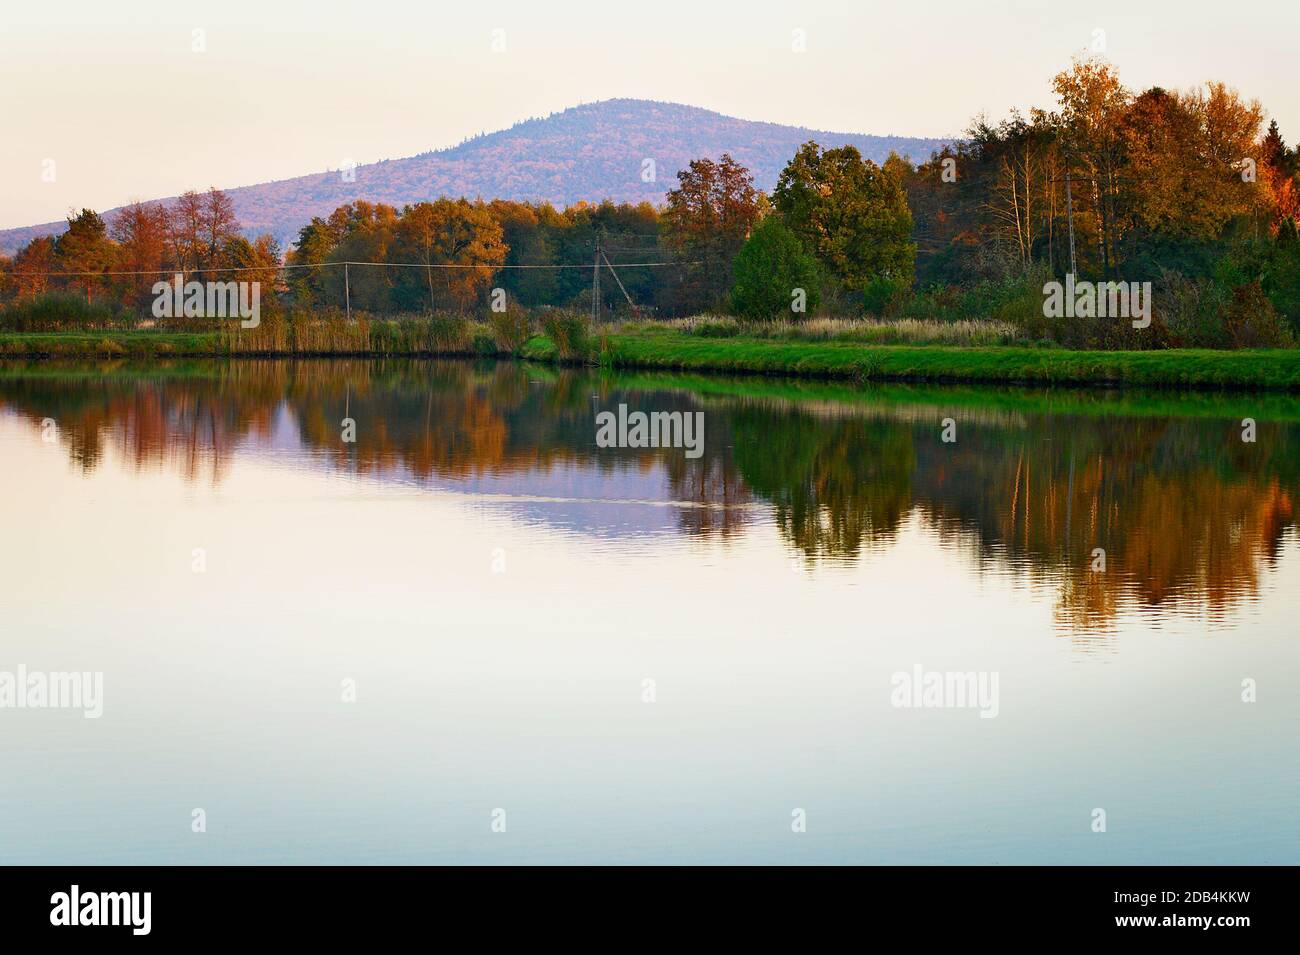 Ciekoty lake with view on Lysica mountain peak. Swietokrzyskie Mountains, Poland. Stock Photo